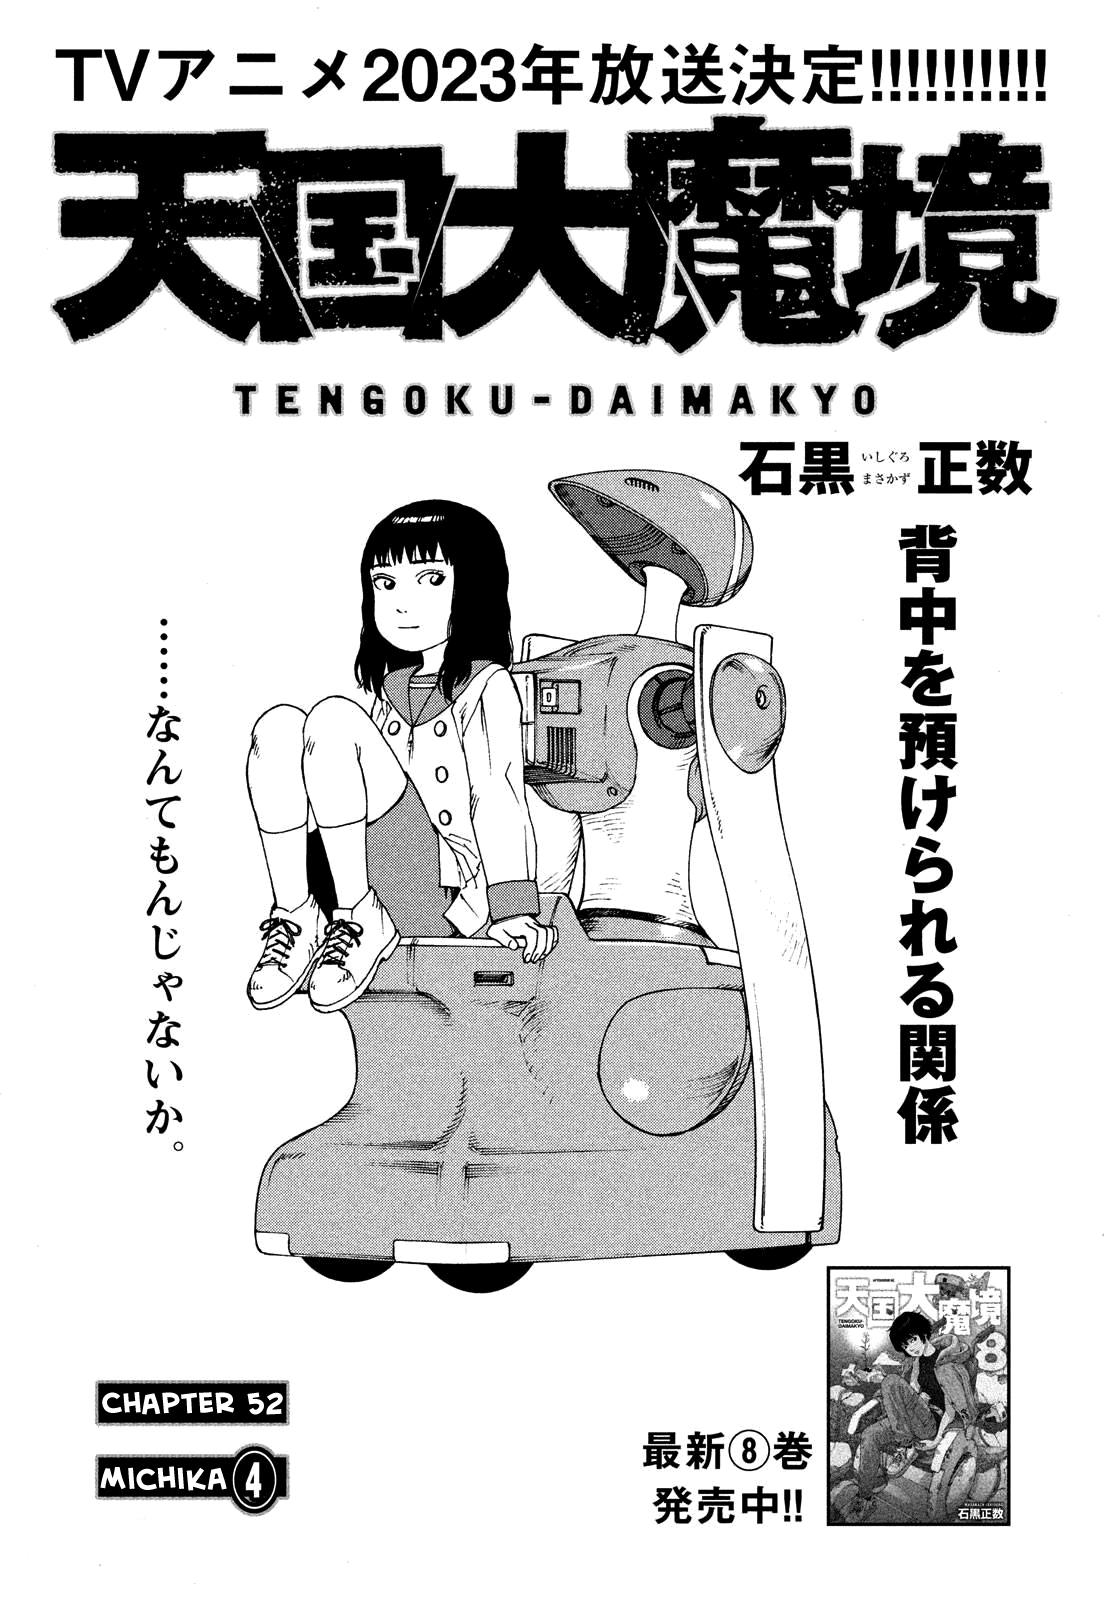 Read Tengoku Daimakyou Chapter 41: Garbage Day - Manganelo